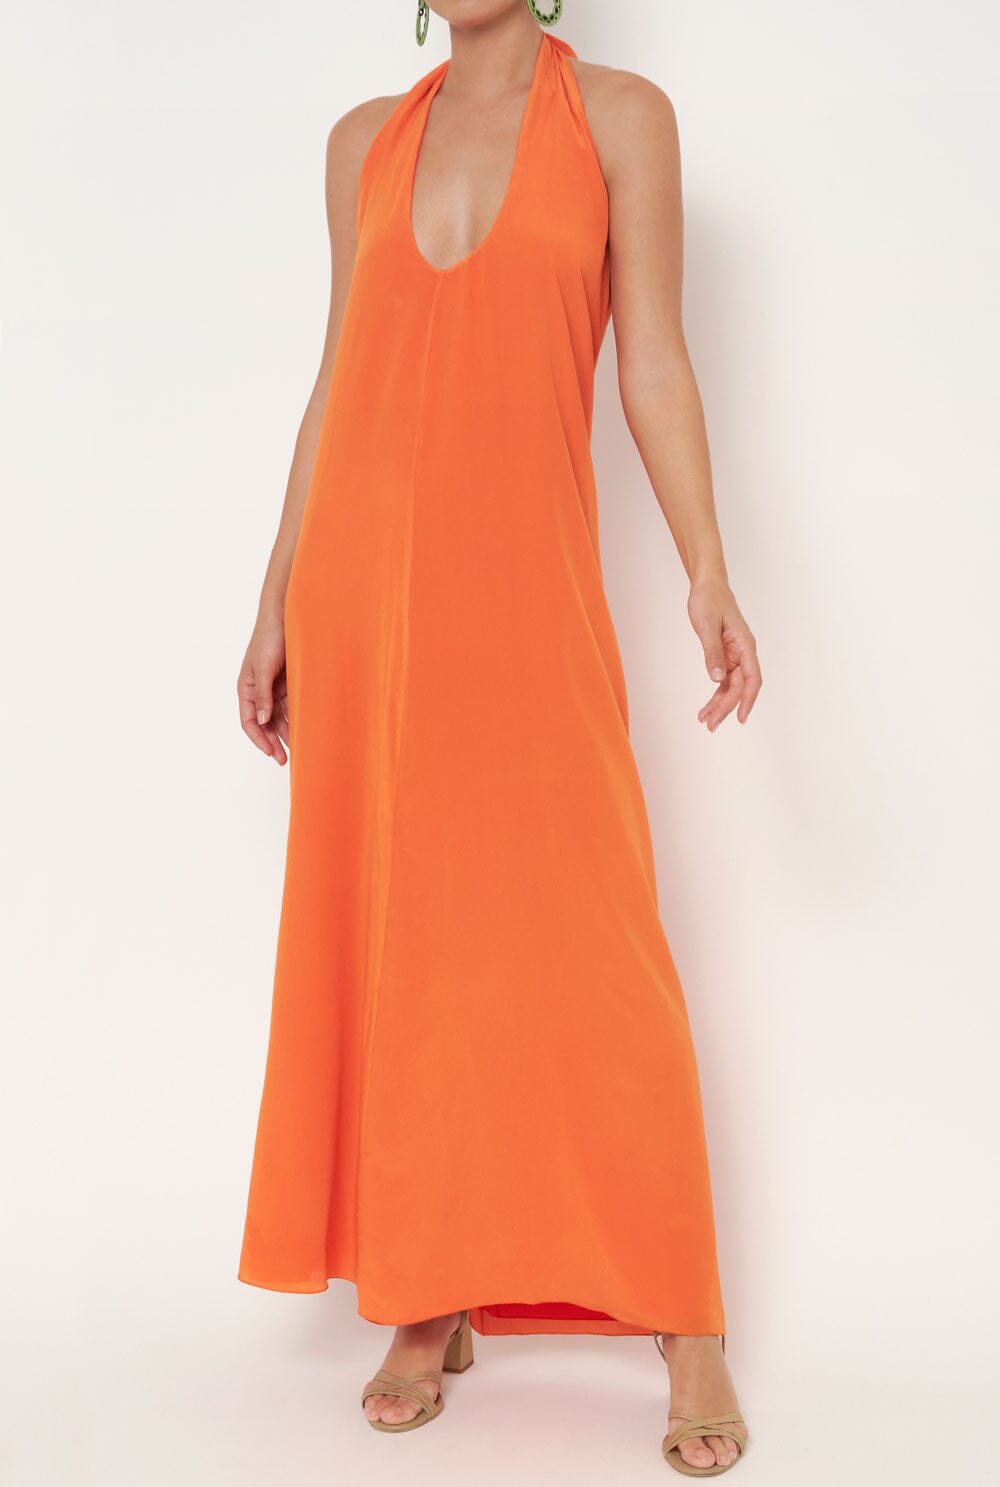 Juno dress orange Dresses Atelier Aletheia 